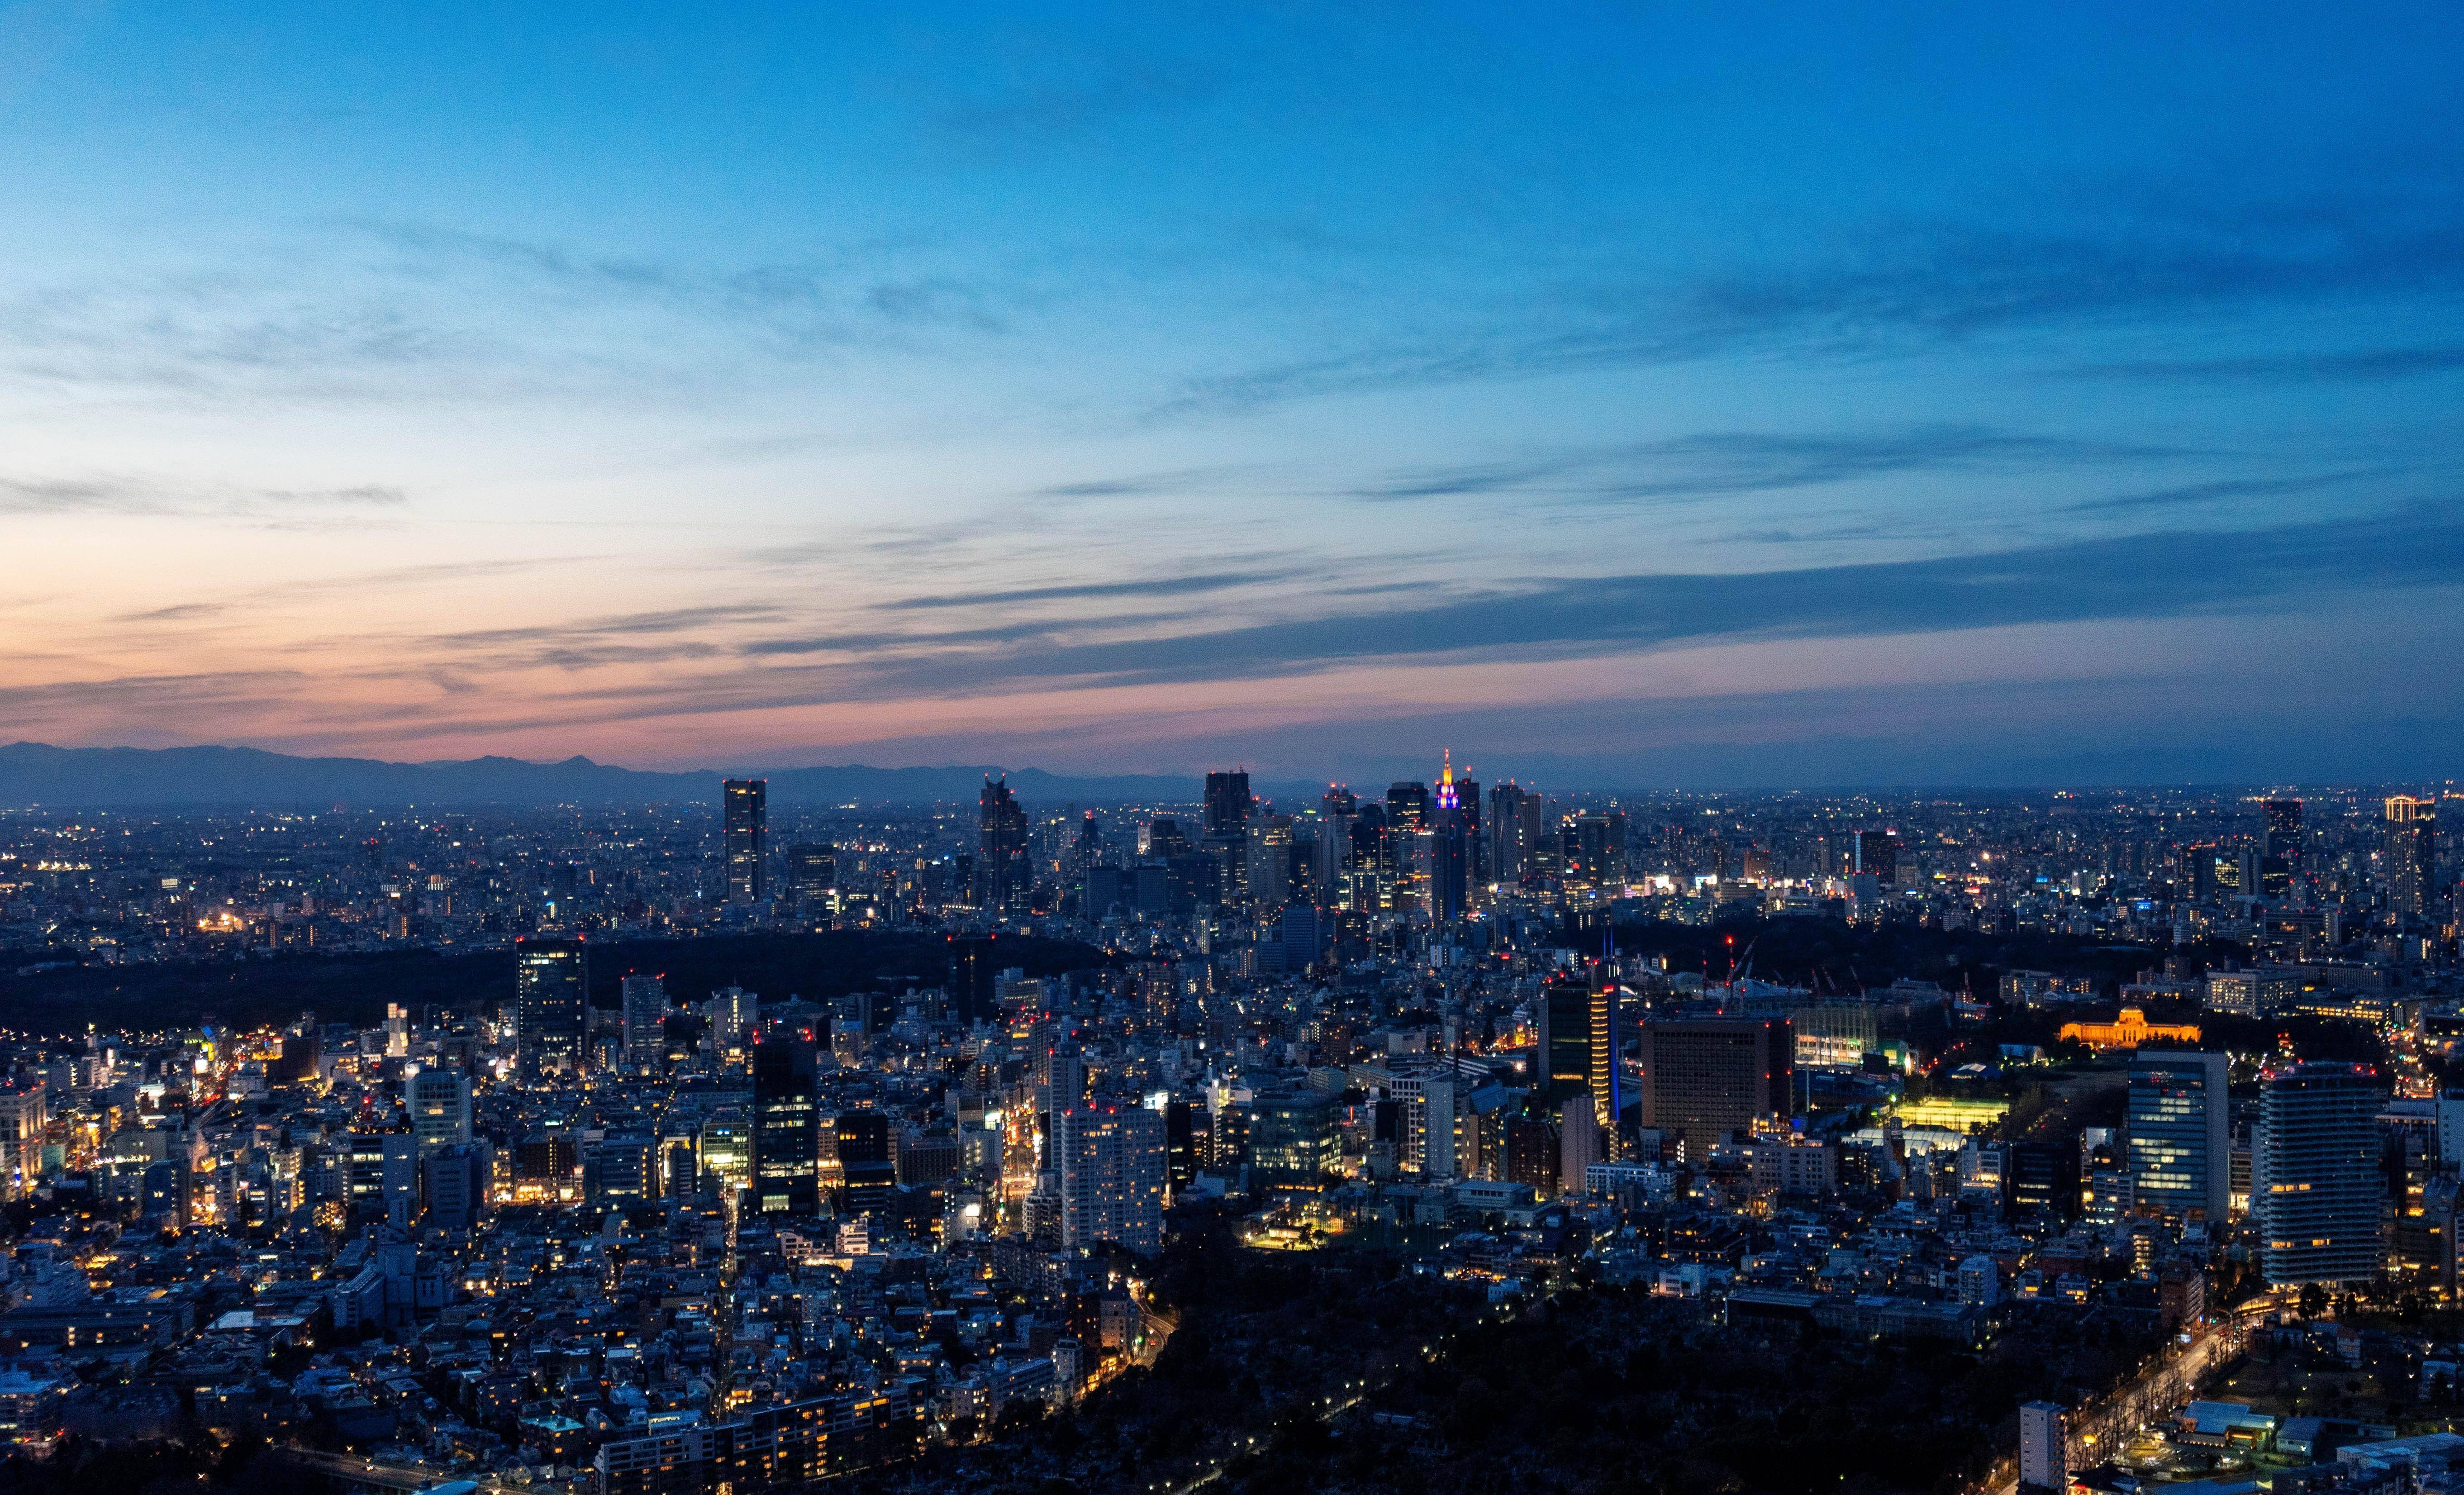 高空俯瞰东京全景,建筑密集而精致,超高层大楼却不多